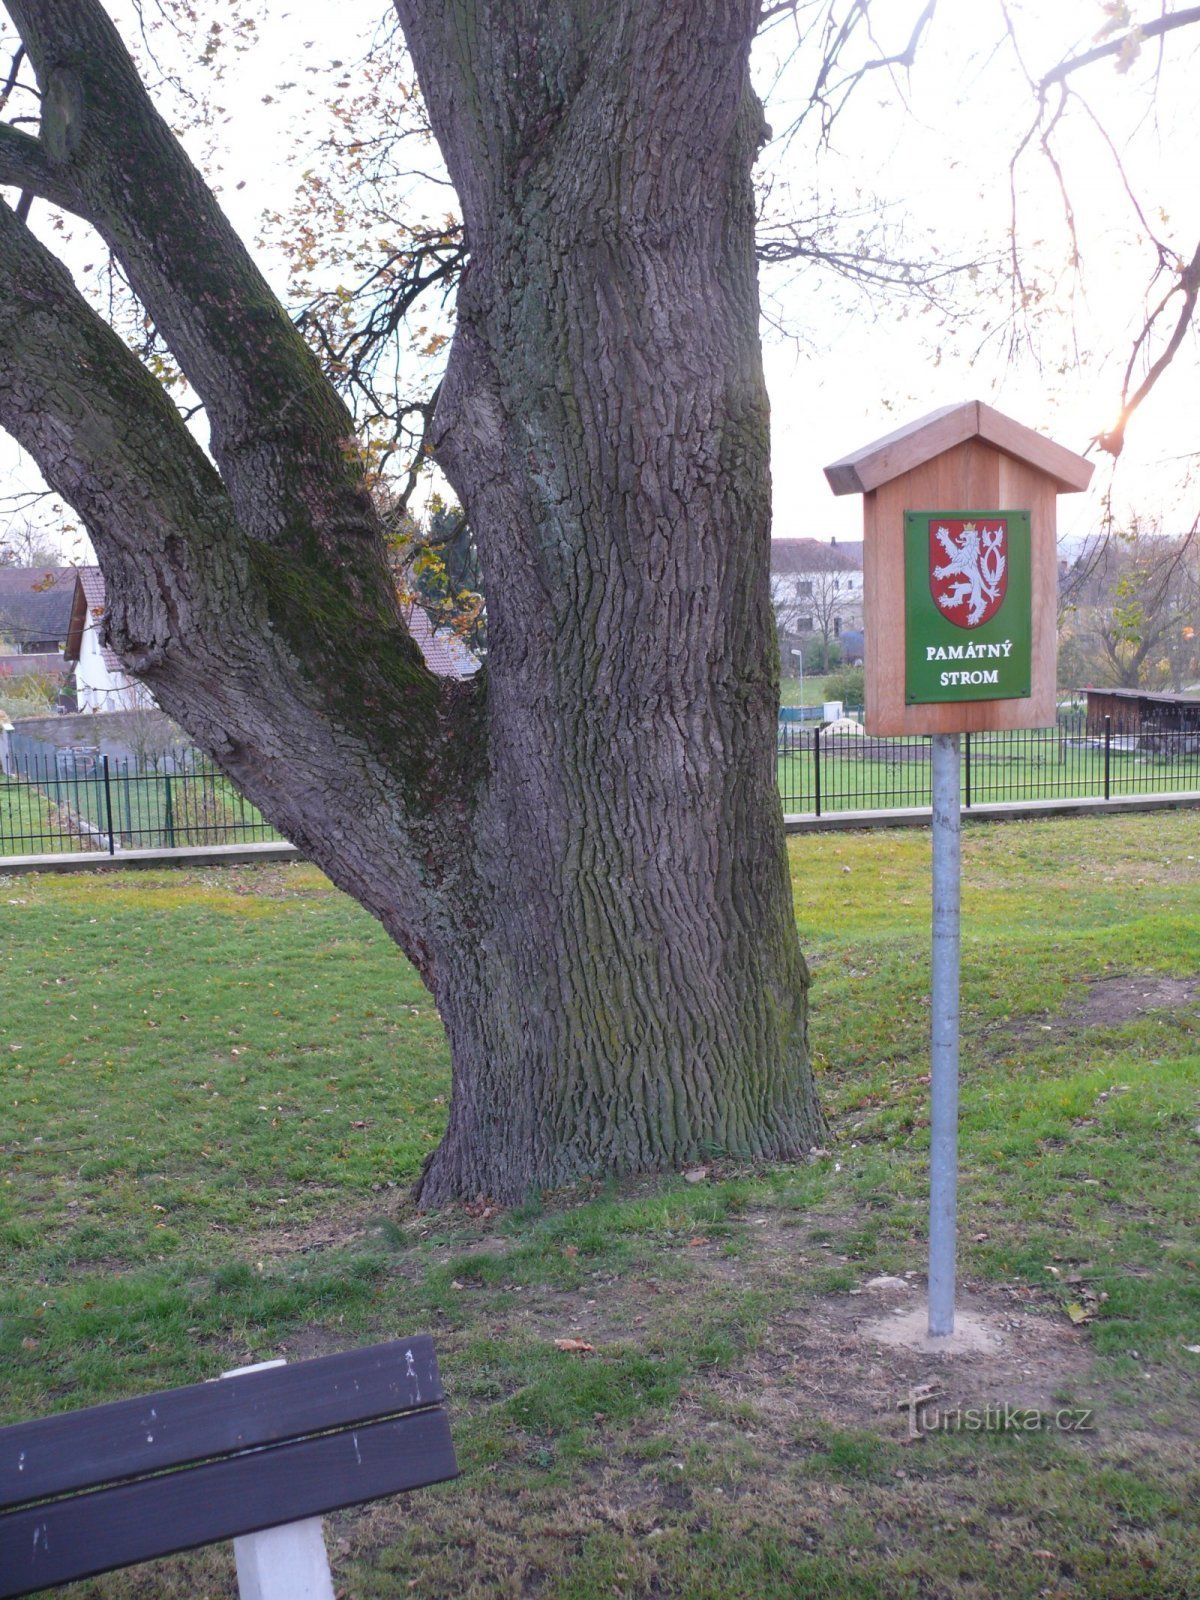 Il ramo commemorativo della quercia è già un po' al di sopra del suolo